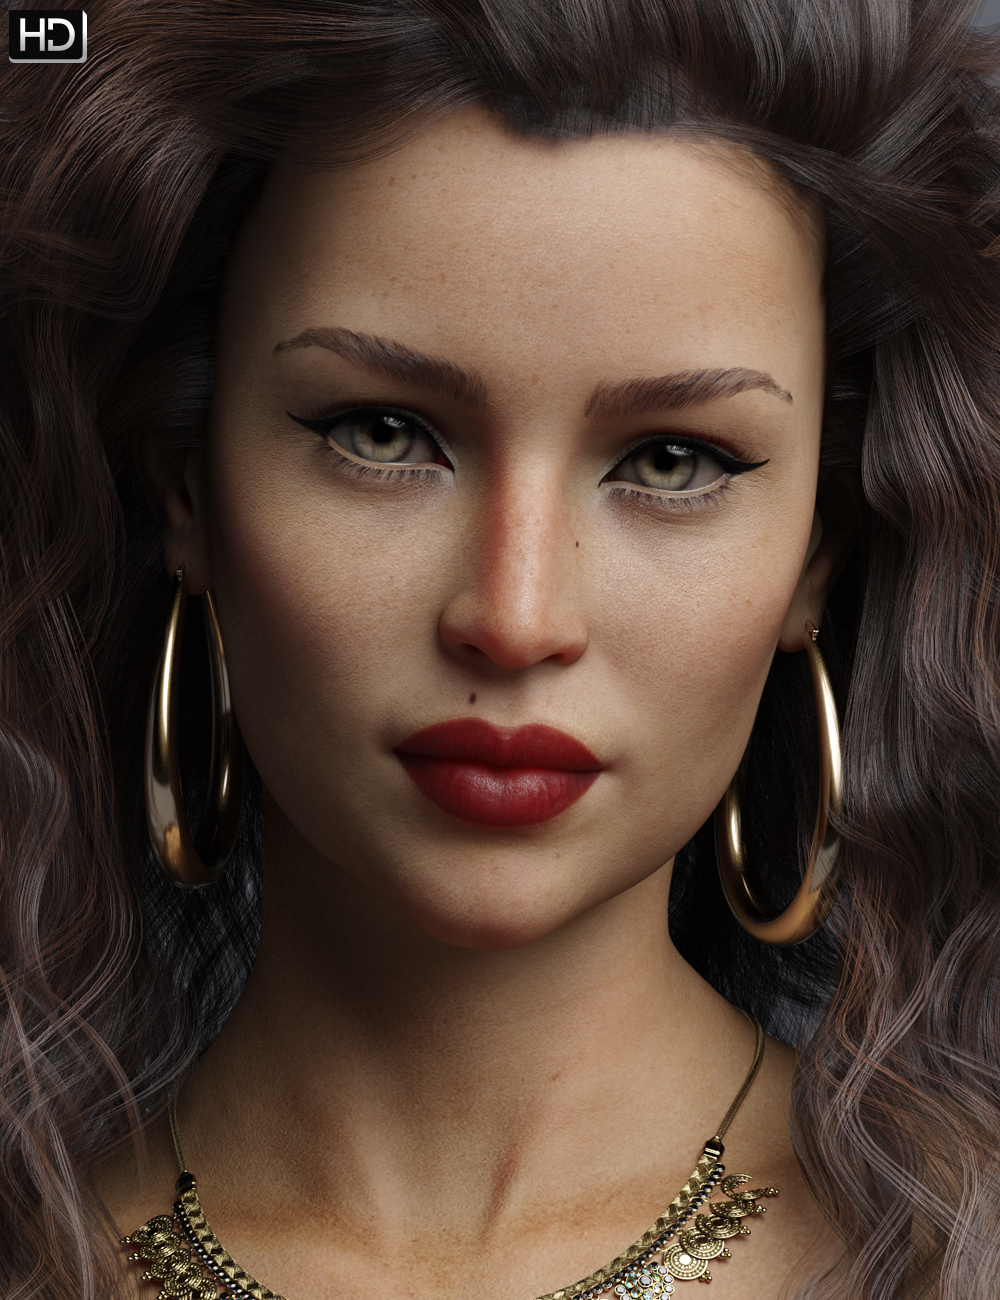 Maarah HD for Babina 8 by: Emrys, 3D Models by Daz 3D